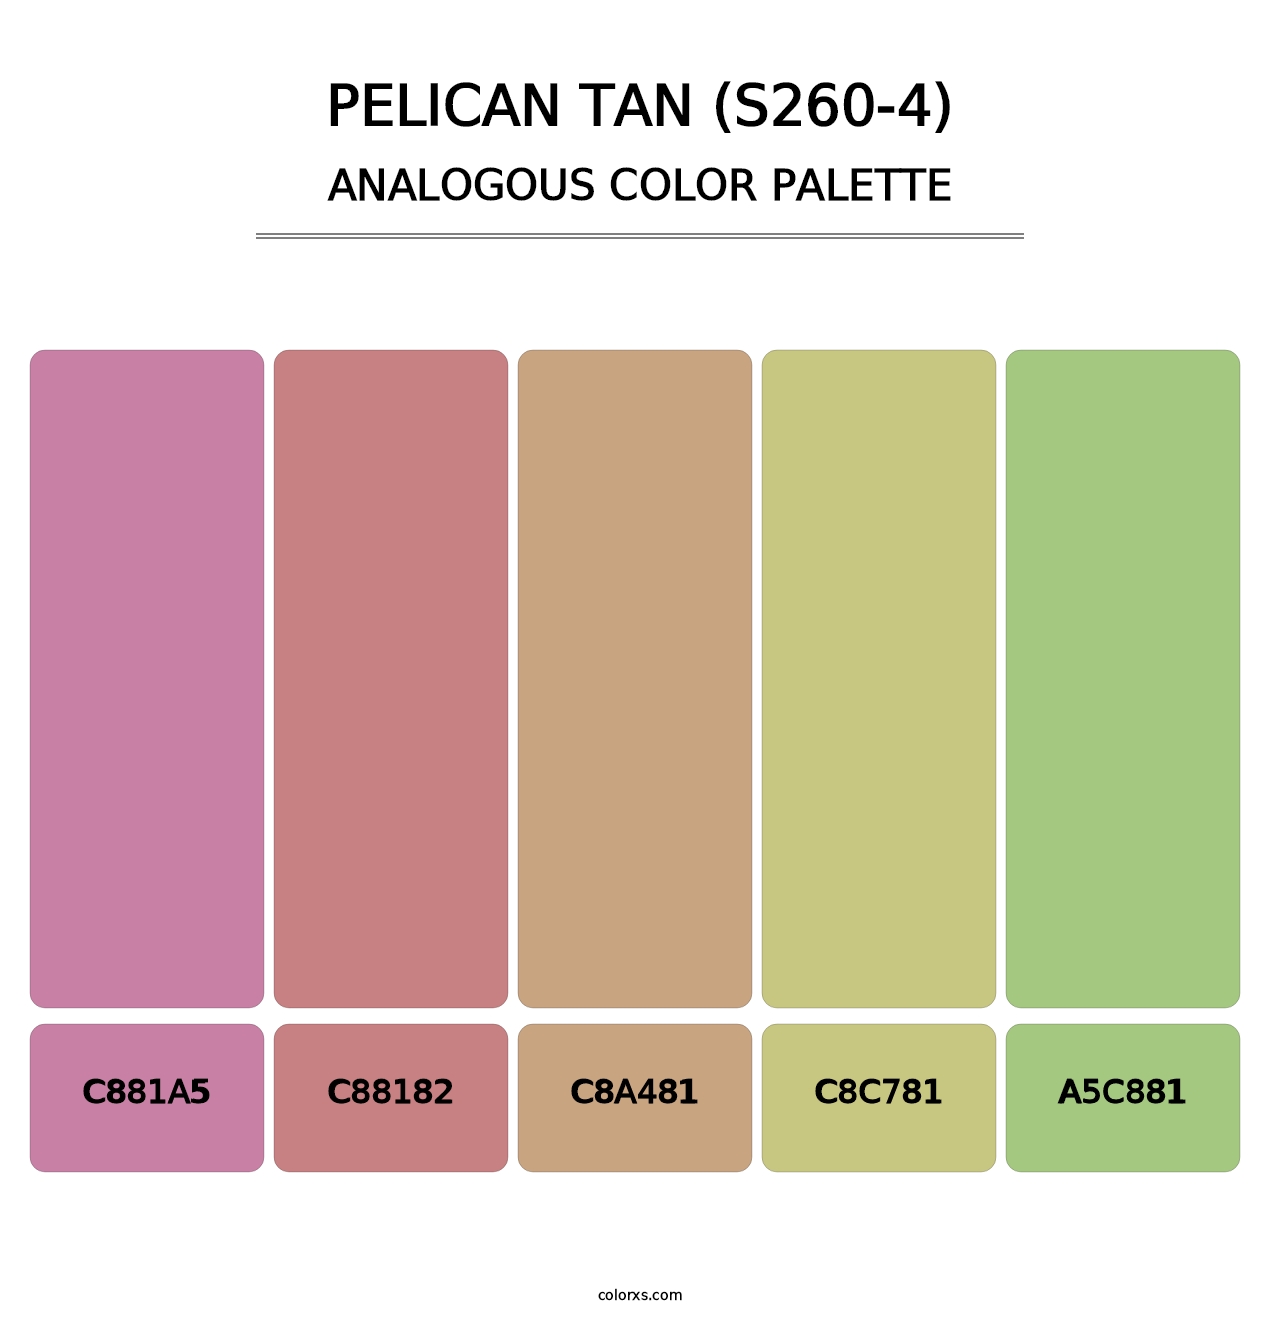 Pelican Tan (S260-4) - Analogous Color Palette